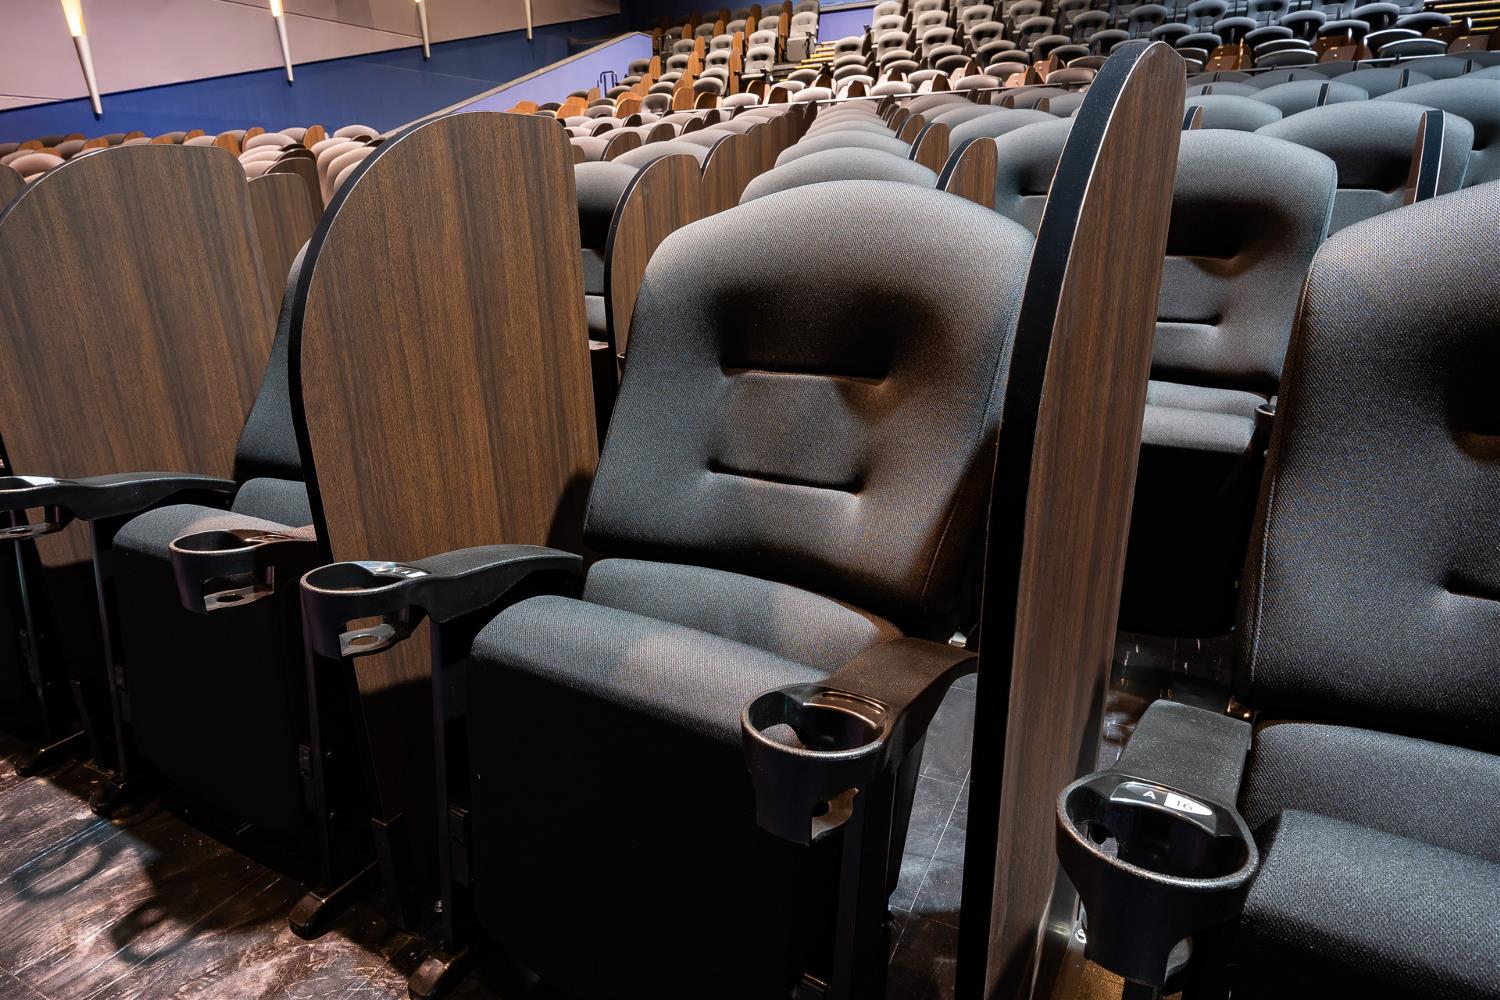 イオンシネマ市川妙典スクリーン内の通常座席部分。一般的には、肘掛けとドリンクホルダーは隣接する各席の間に1つずつ設置されているのみだ（写真：イオンエンターテイメント）